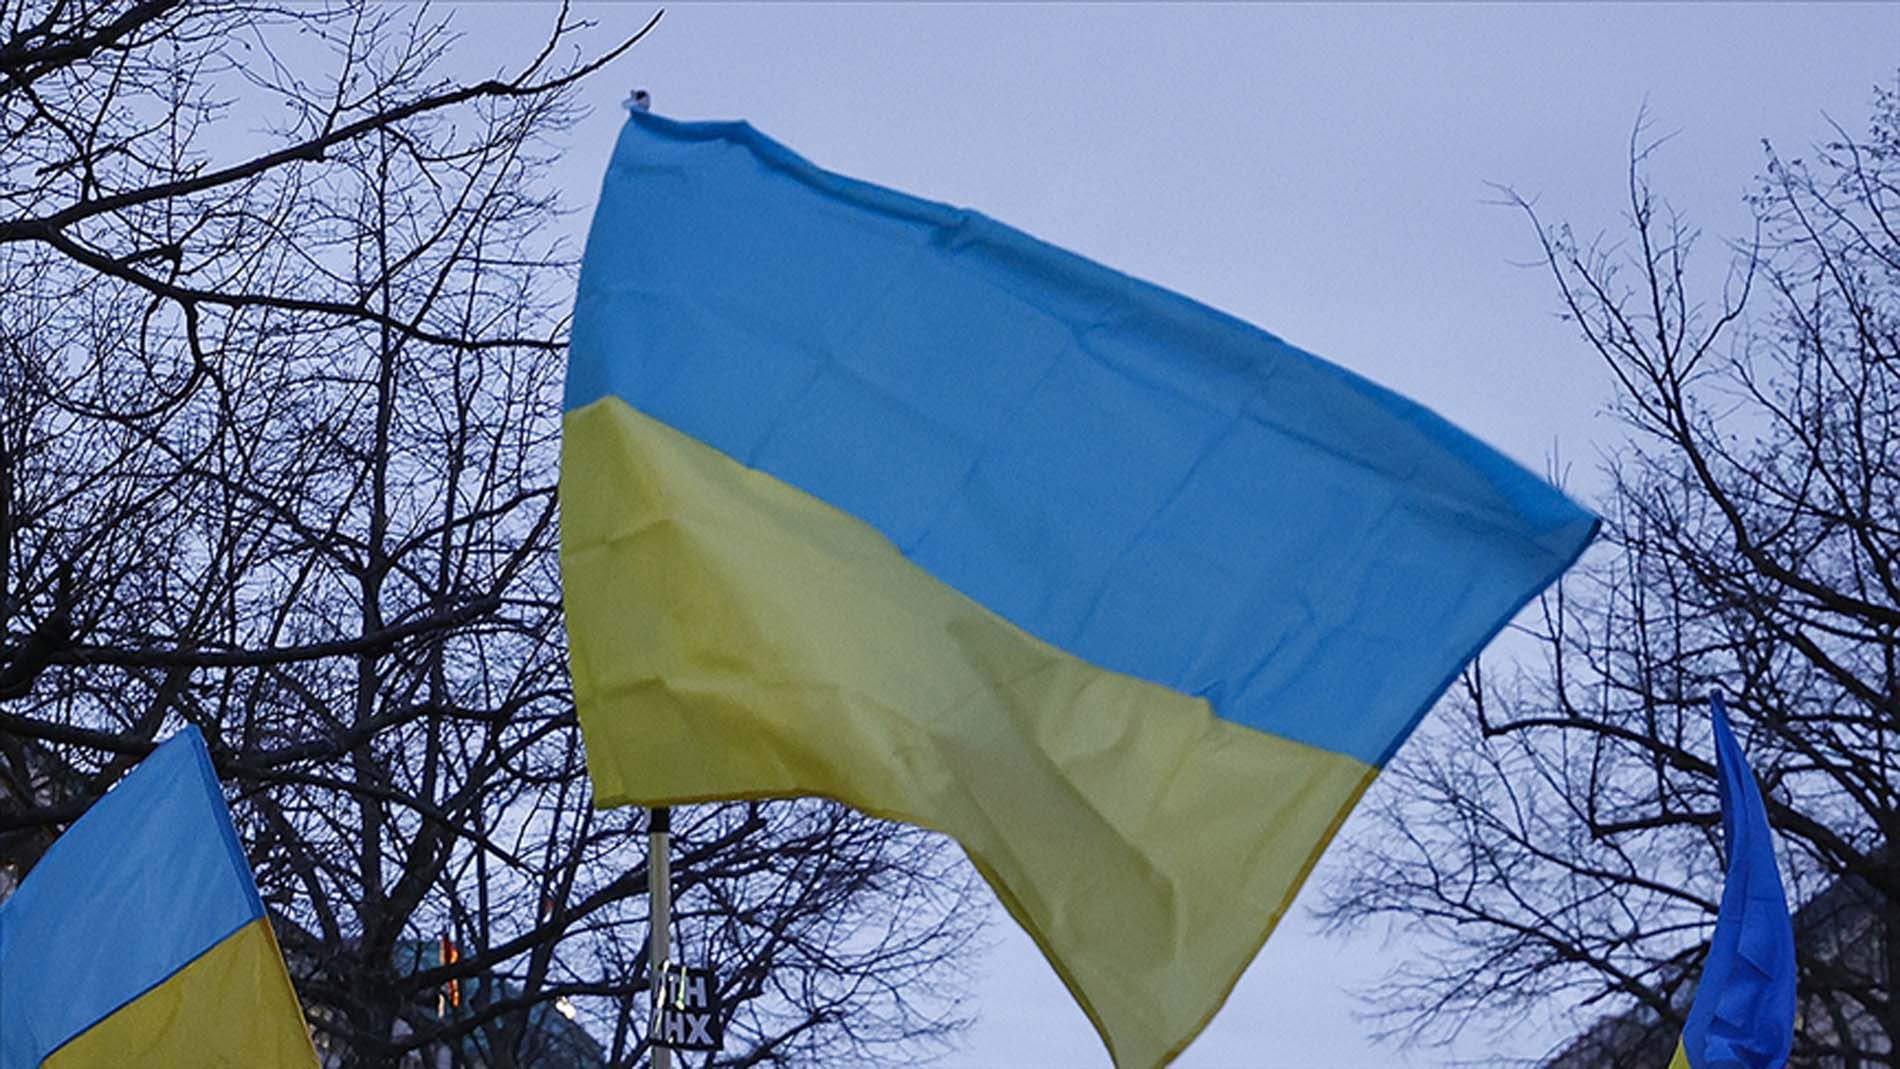 Bir de 'Saymaz' diyorlar! Halk TV Yazarı İsmail saymış! Ukraynalılar 2 kez 'Bayraktar' dedi, yardım istedi